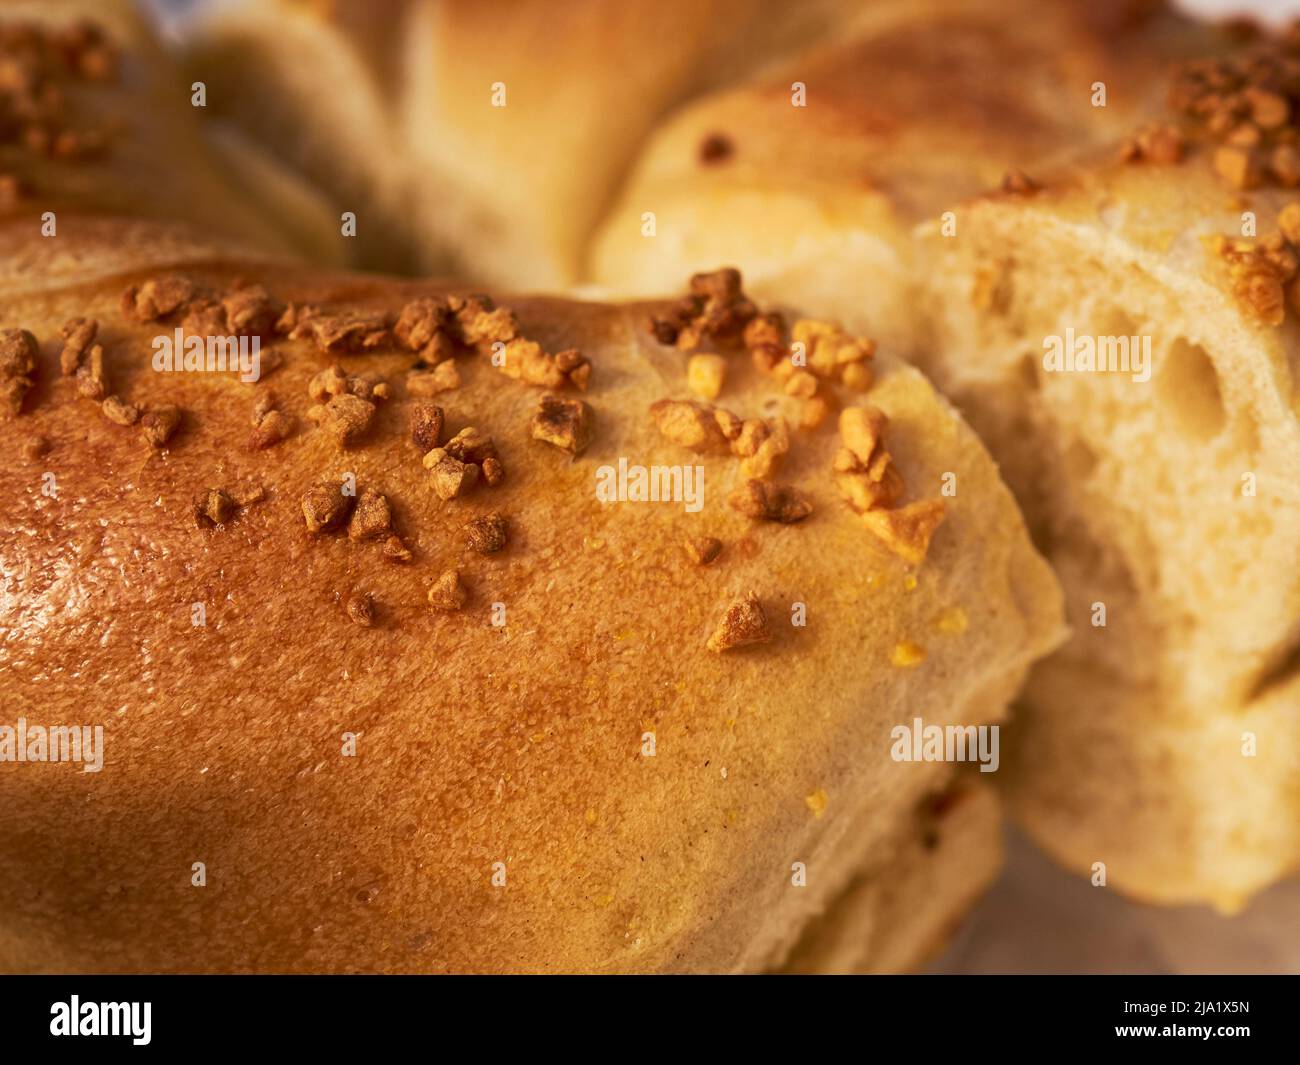 Un bagel de cebolla en rodajas y con mantequilla, el pan clásico de la Europa oriental judía Foto de stock